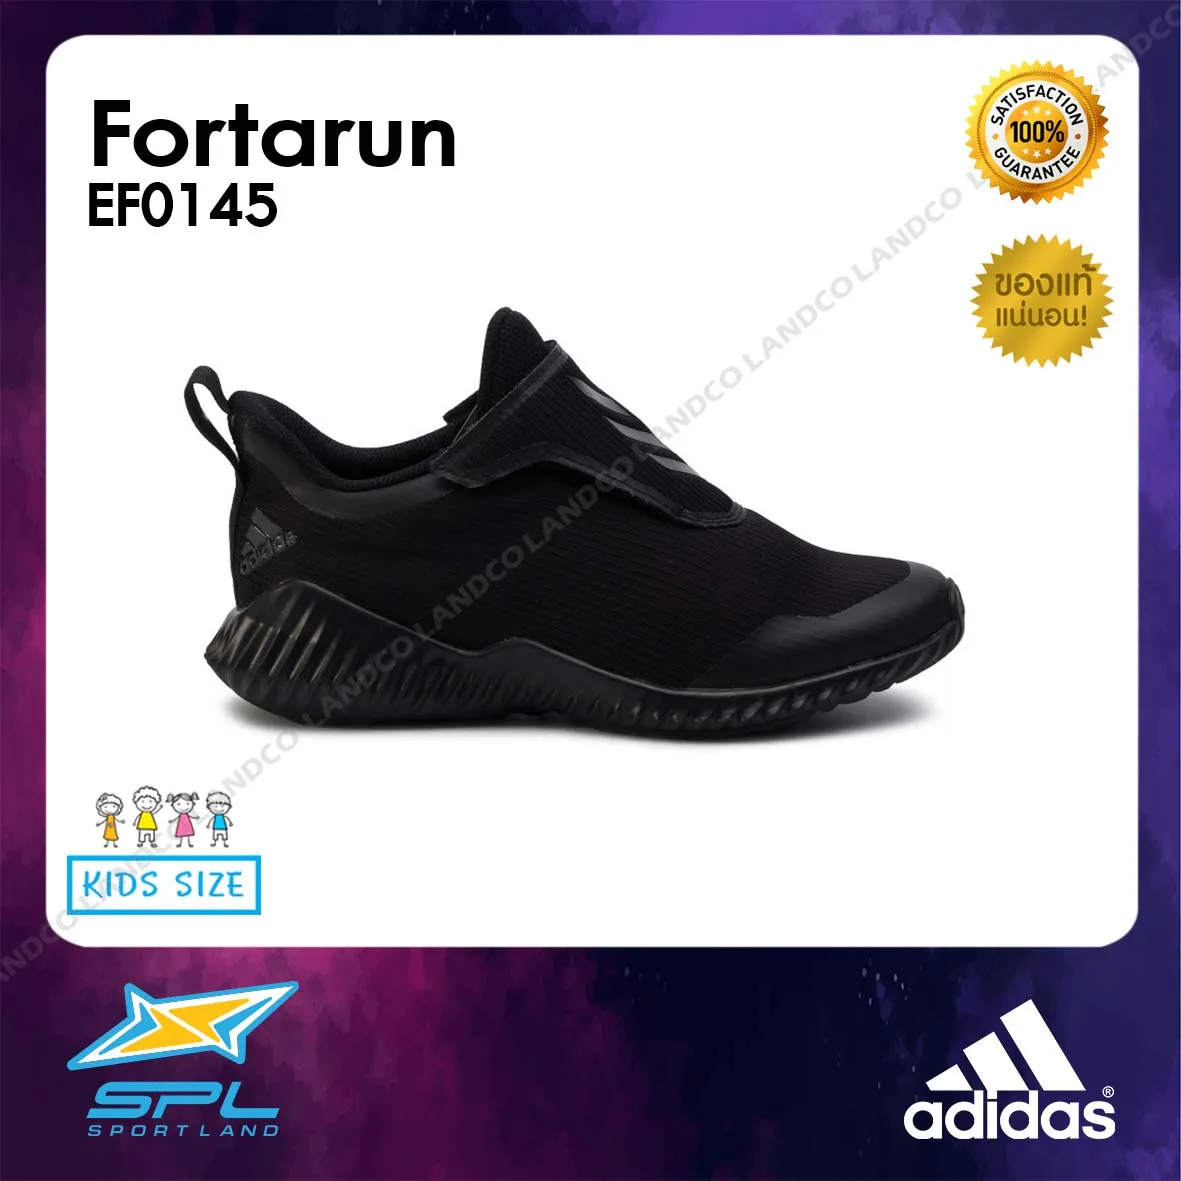 Adidas รองเท้าวิ่งเด็ก รองเท้าแฟชั่น รองเท้ากีฬา รองเท้าผ้าใบ รองเท้าเด็ก อาดิดาส Running Kids Shoe Fortarun EF0145 (1600)